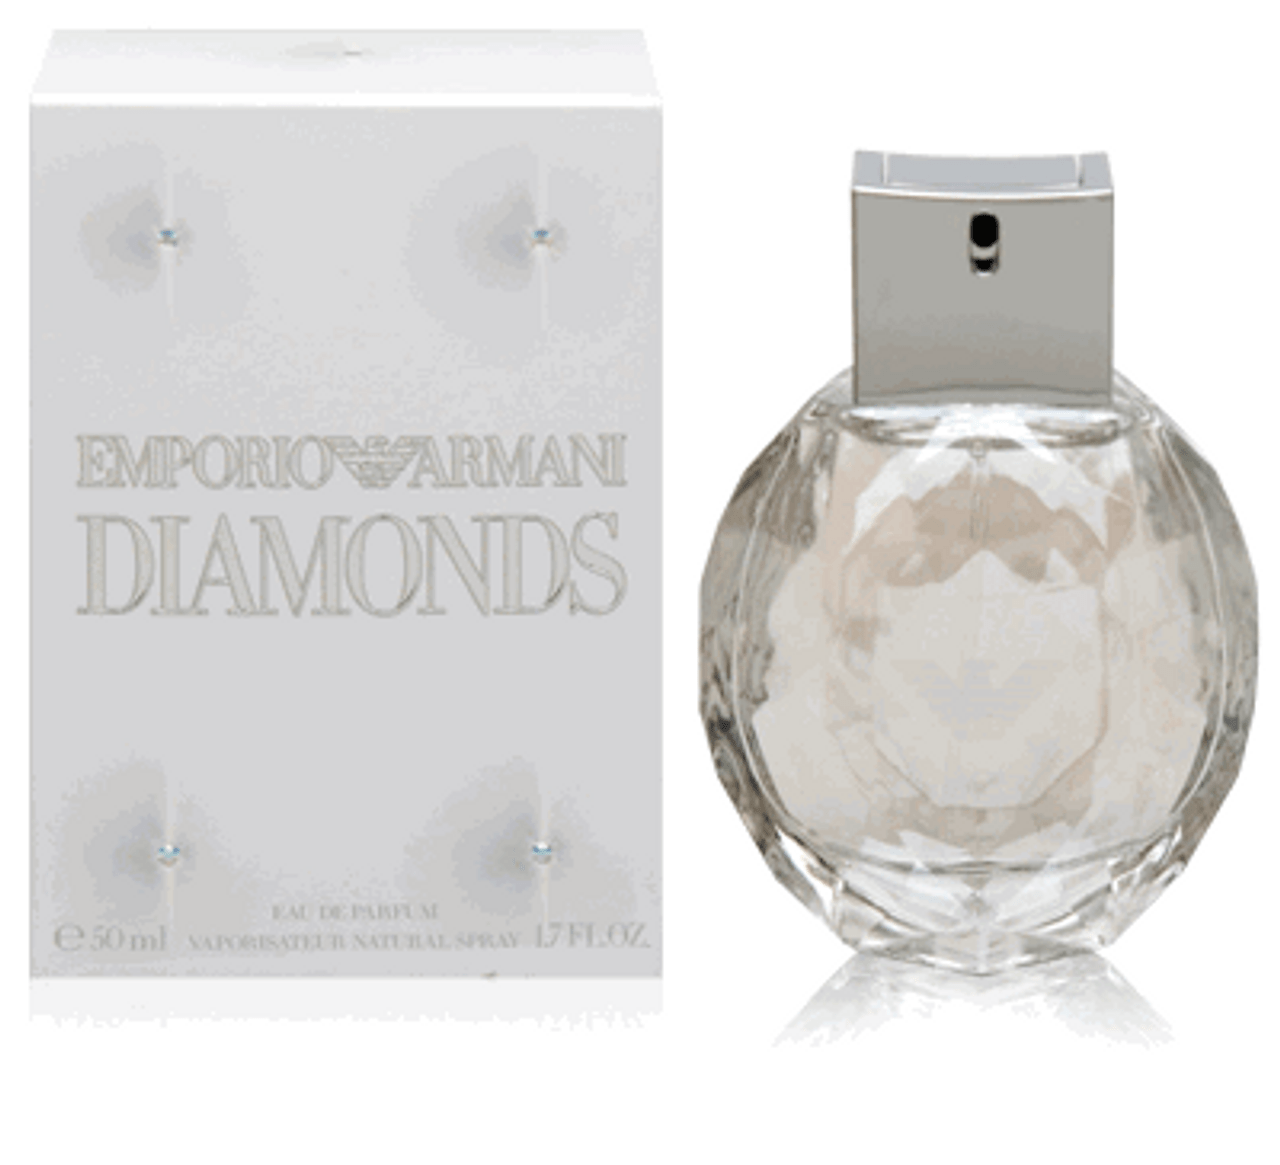 Emporio Armani Diamonds For Women 3.4 oz Edp Spray - HottPerfume.com